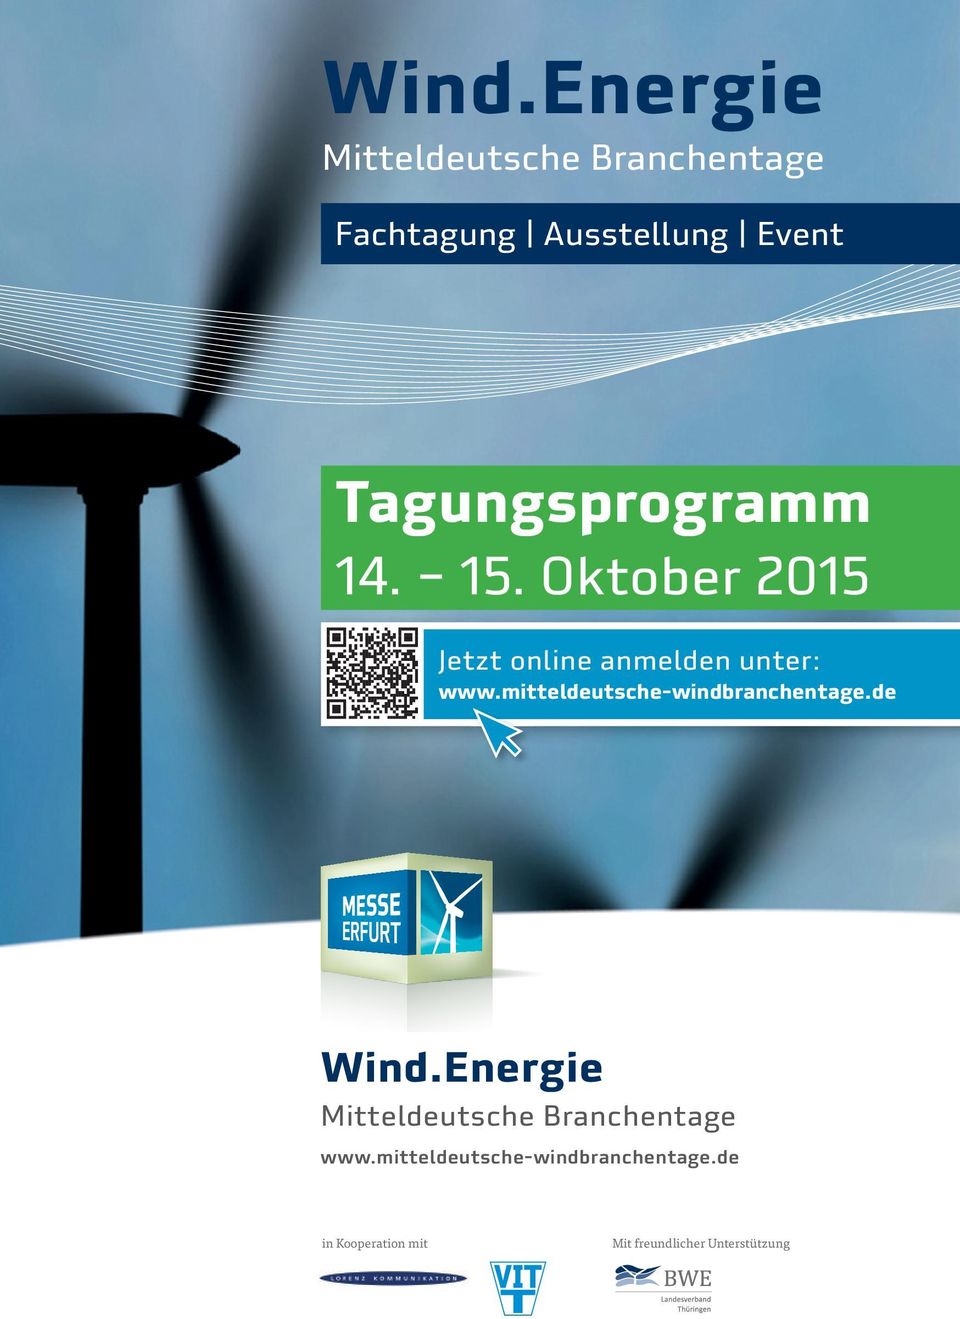 mitteldeutsche-windbranchentage.de Wind.